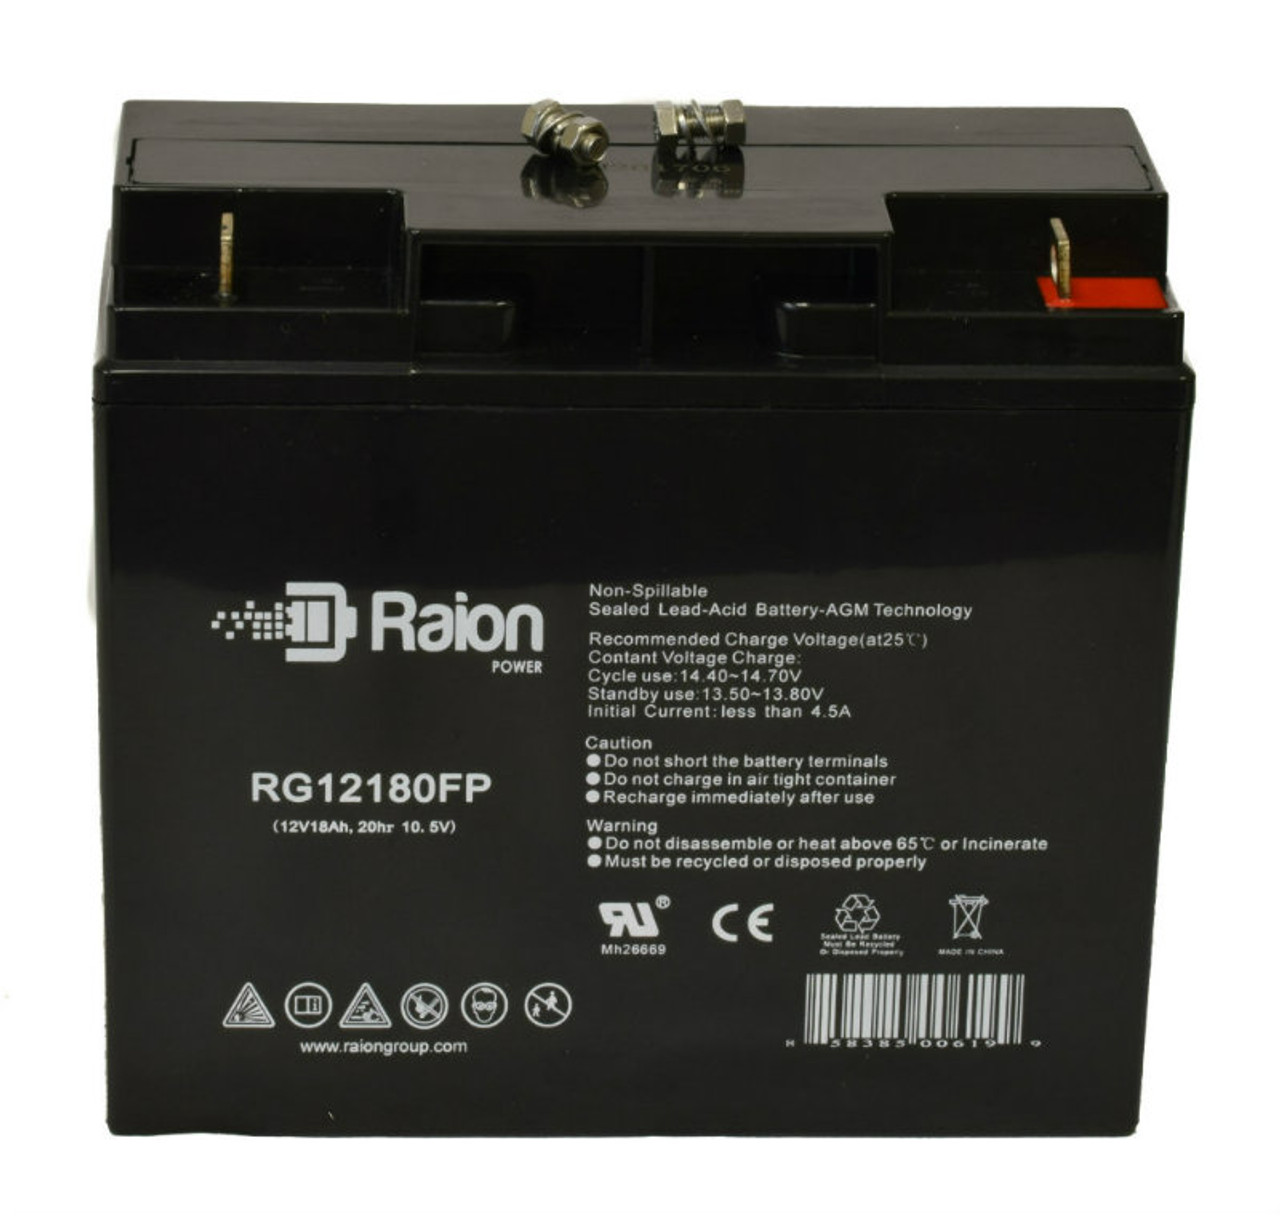 Raion Power RG12180FP 12V 18Ah Lead Acid Battery for FirstPower FP12180D